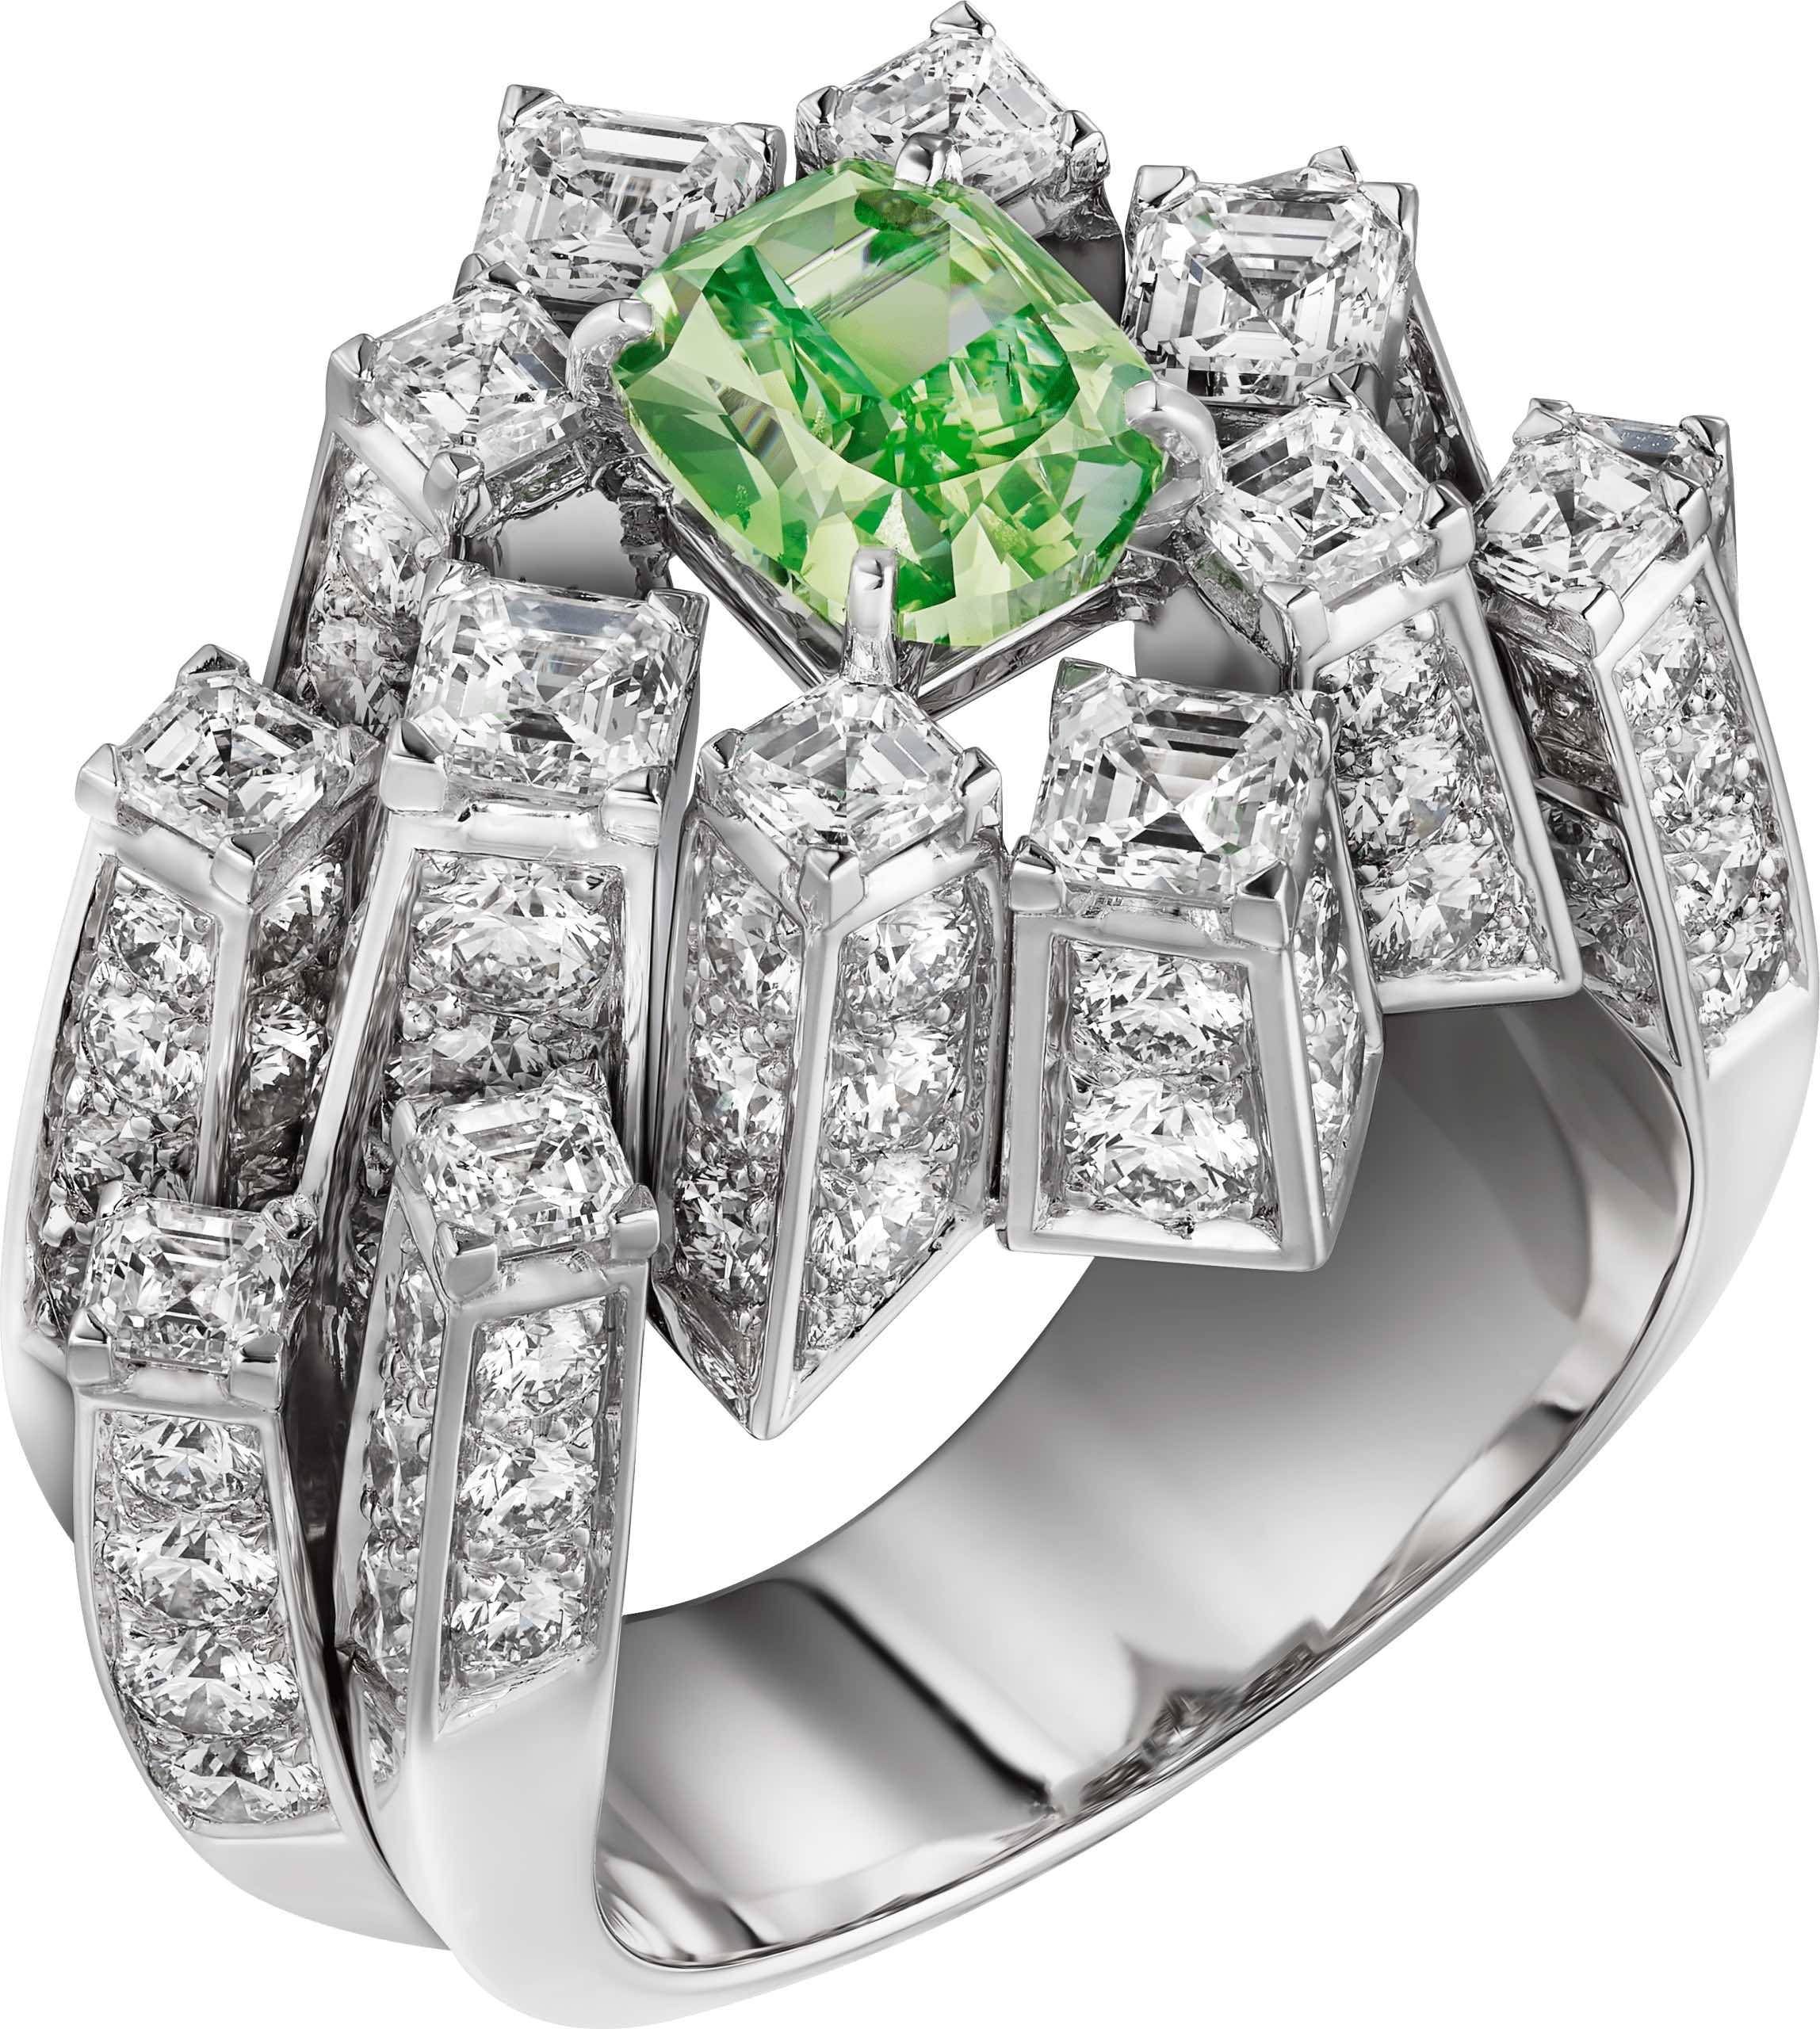 VIRIDIIA RING.  Platinum, green diamond, diamonds.